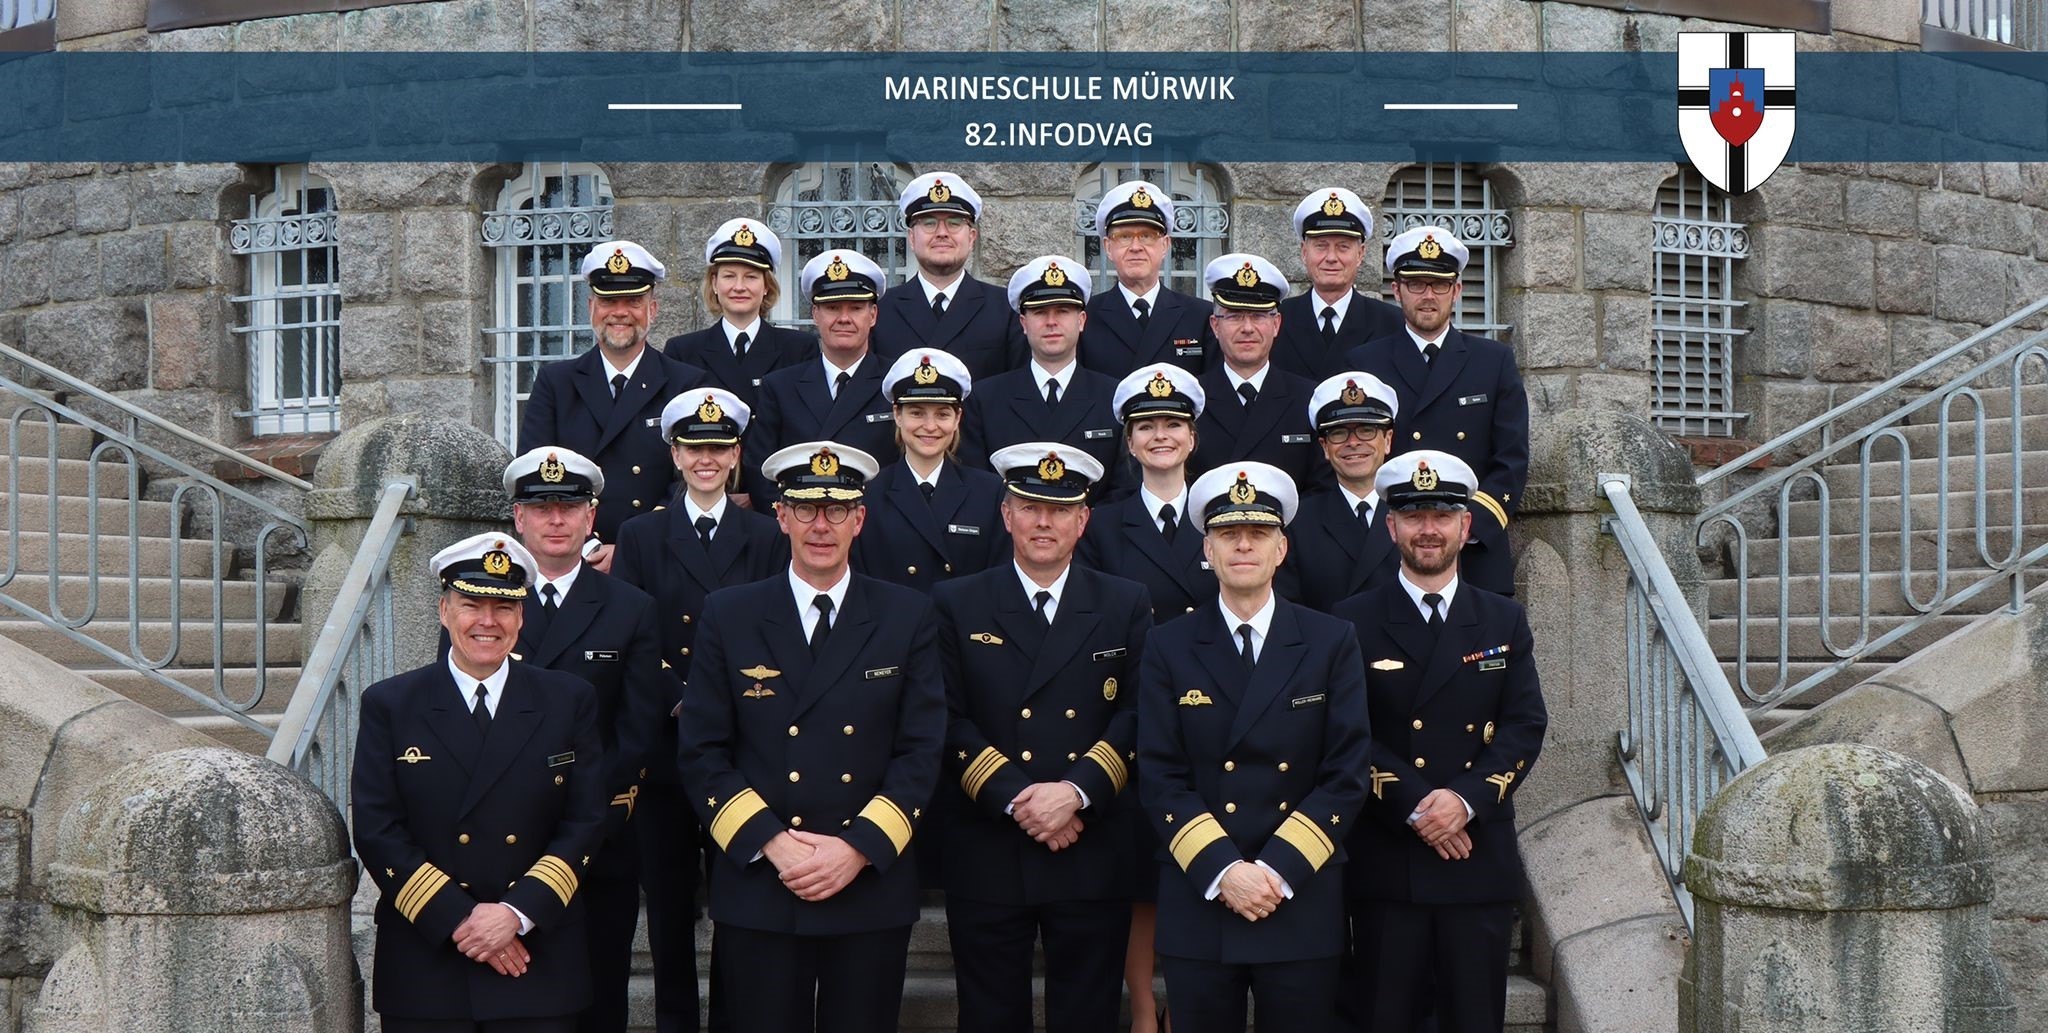 Marineschule Mürwik, Freitreppe: Crewfoto der 82. InfoDVag mit Organisationsteam der MSM sowie den Admiralen Müller-Meinhard und Nemeyer. Foto: 82. InfoDVag.